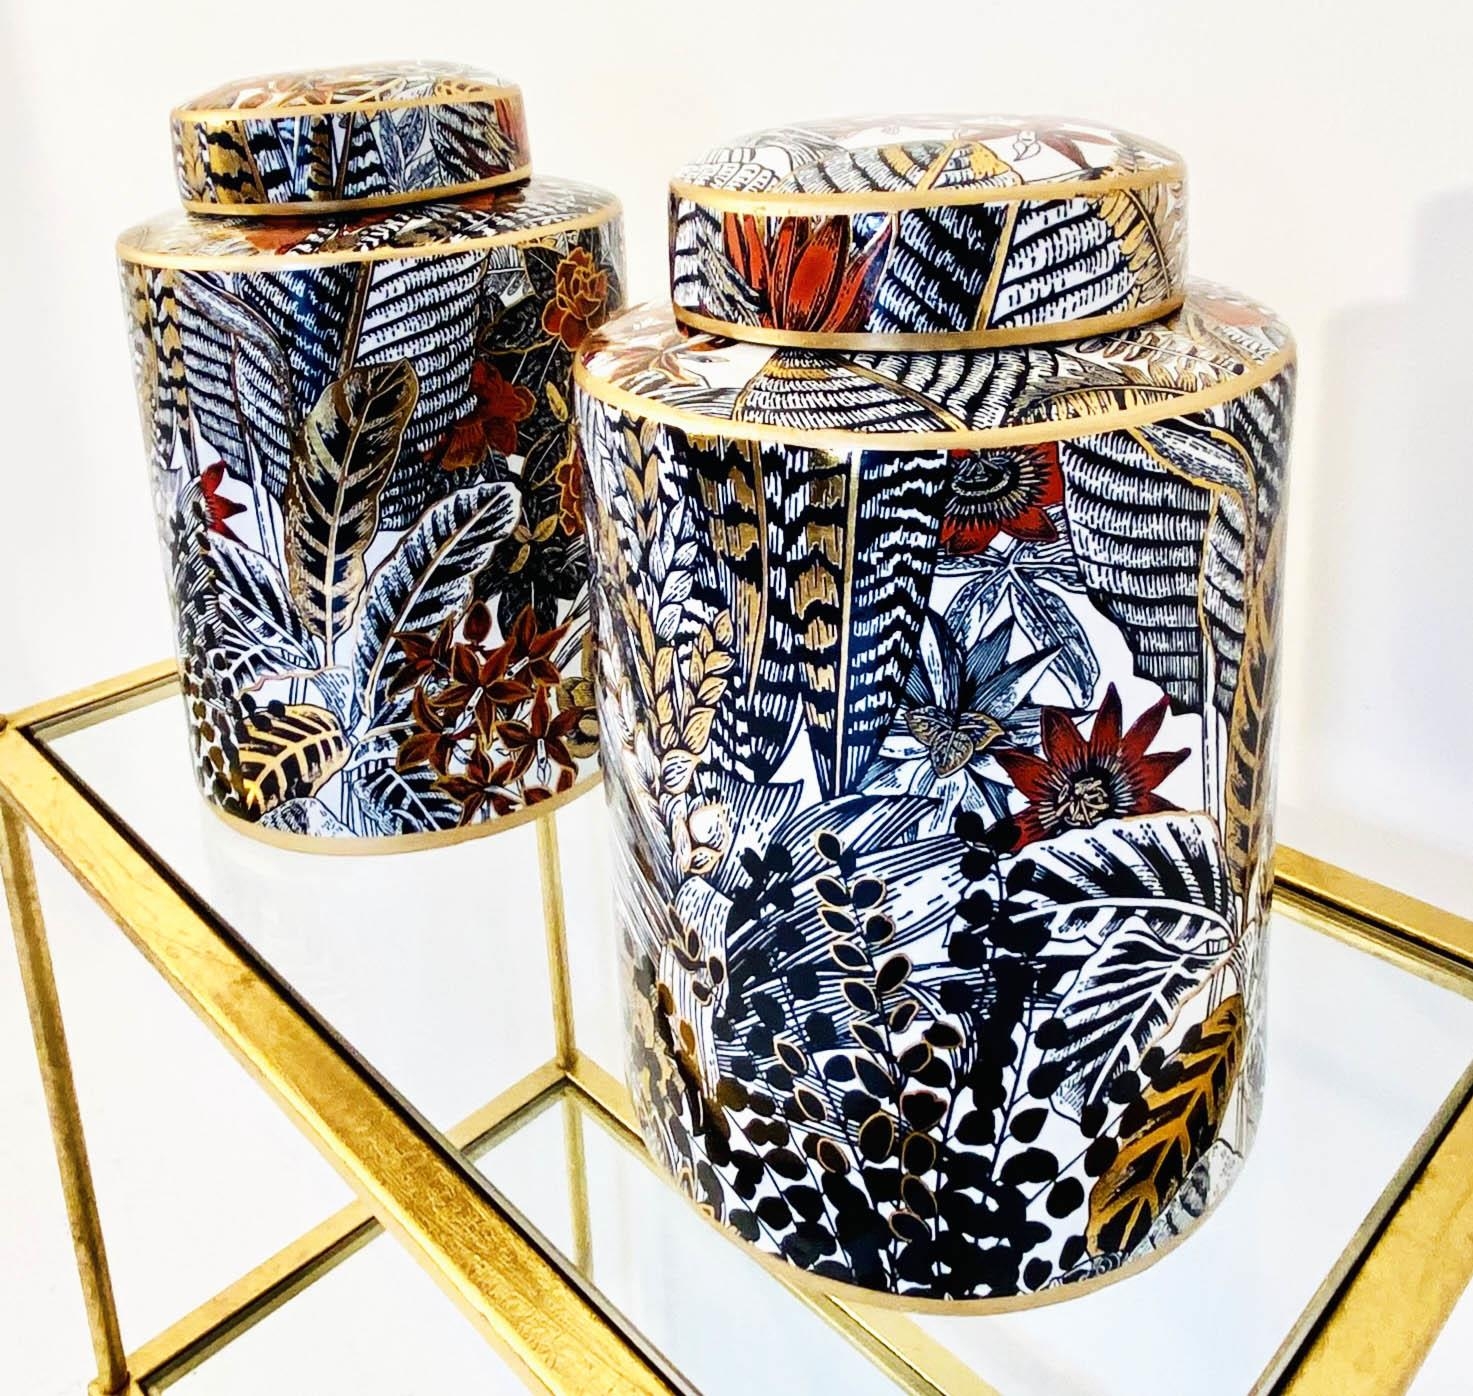 GINGER JARS, 30cm H x 20cm diam., a pair, glazed ceramic with foliate print design. (2) - Image 4 of 5